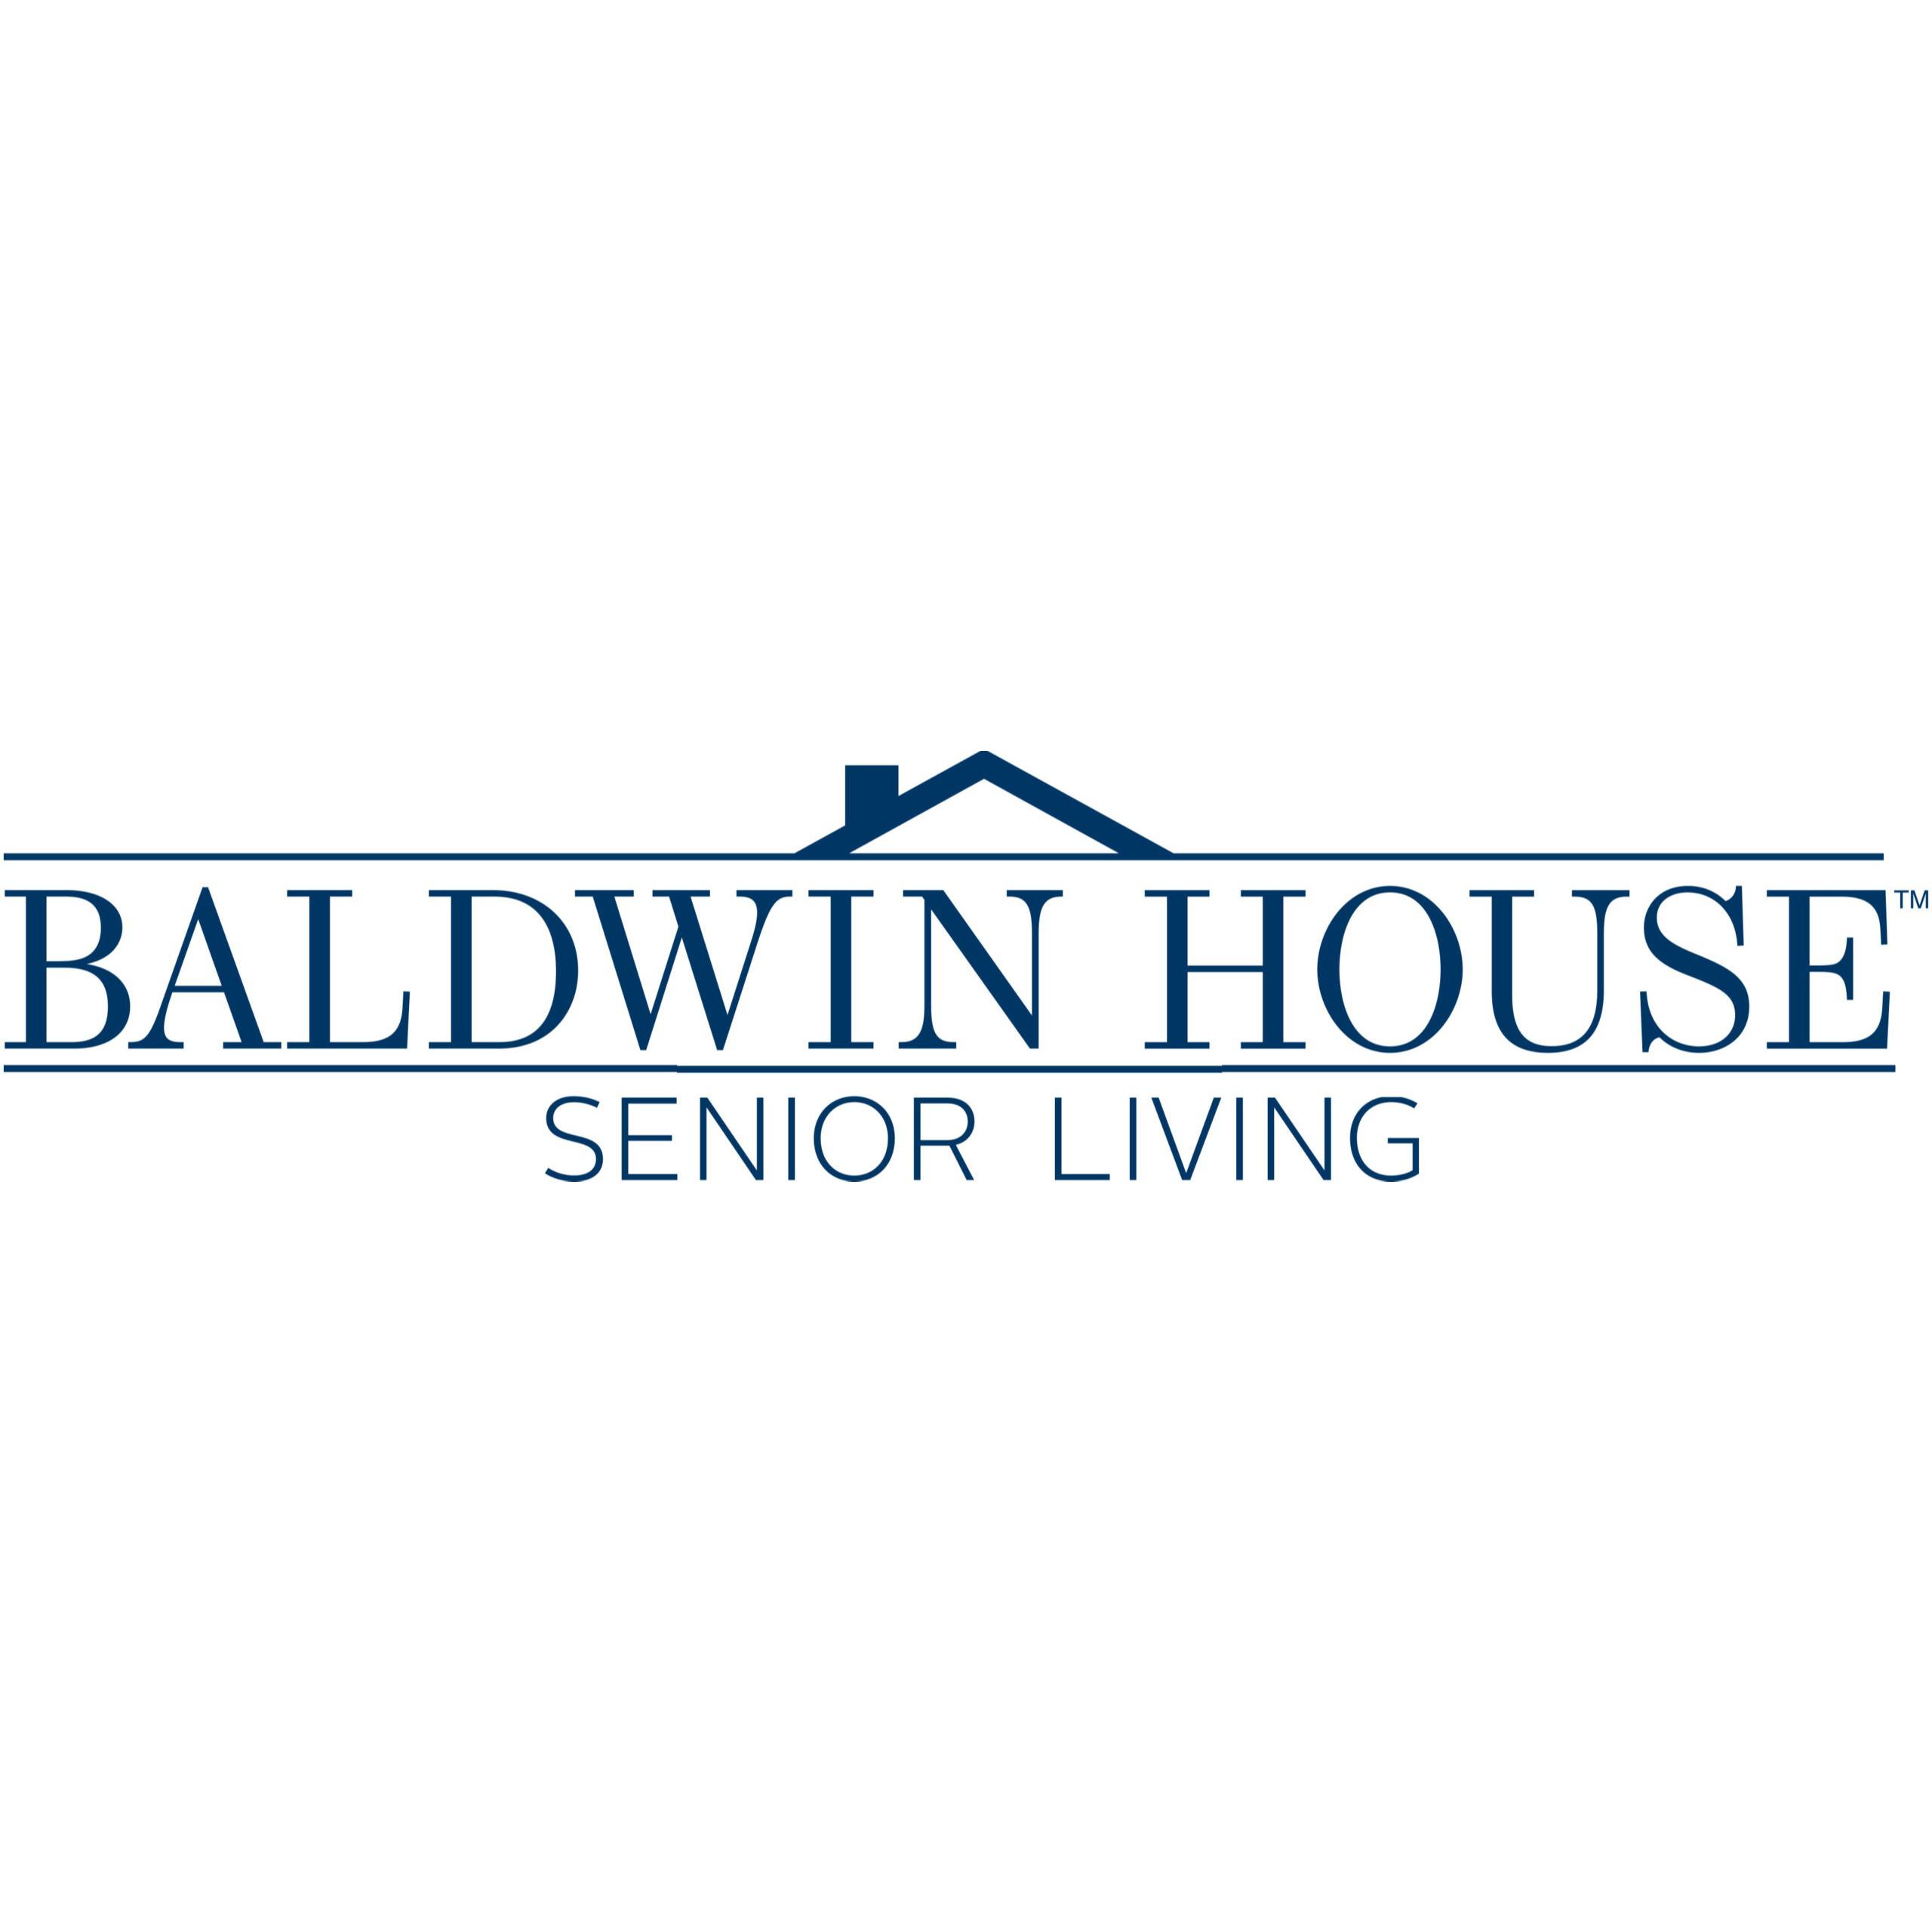 Baldwin House Senior Living Oakland - Pontiac, MI 48340 - (248)335-7020 | ShowMeLocal.com